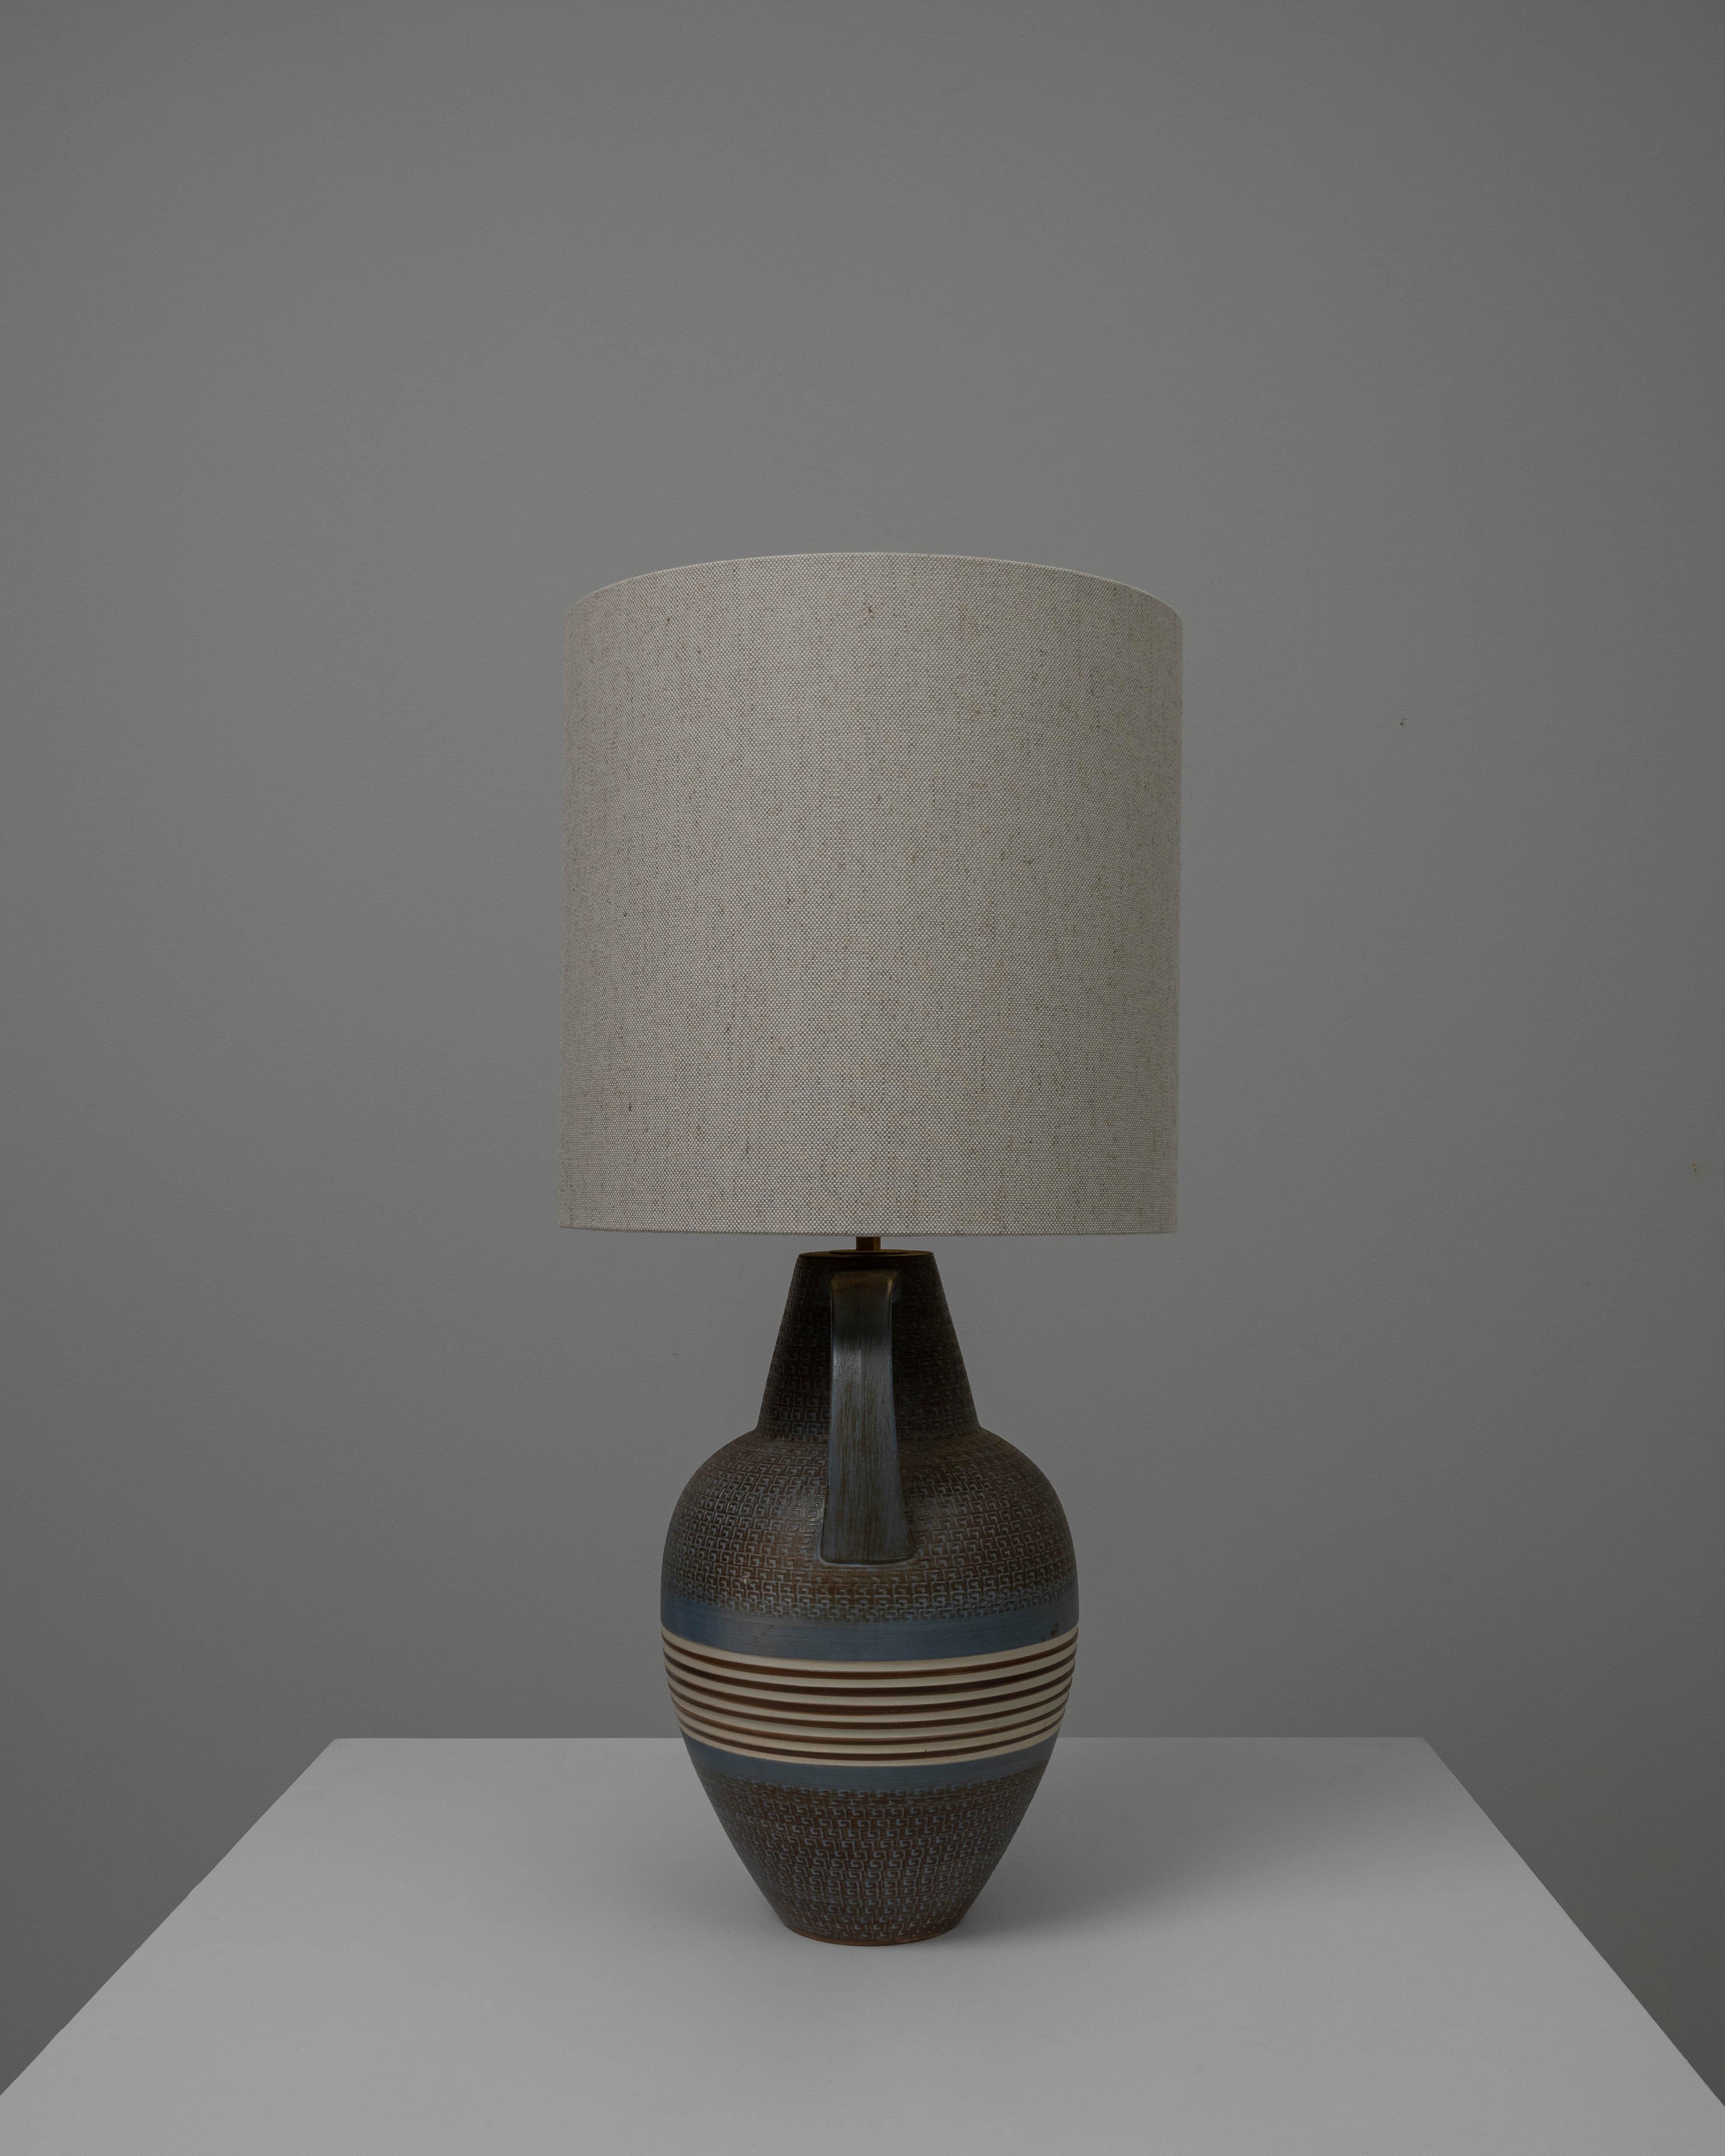 Cette lampe de table en céramique allemande du XXe siècle incarne l'attrait de la terre et de la texture du design artisanal de l'époque. Le socle, à la forme robuste et doté d'une poignée pour une touche de charme ancien, présente une glaçure